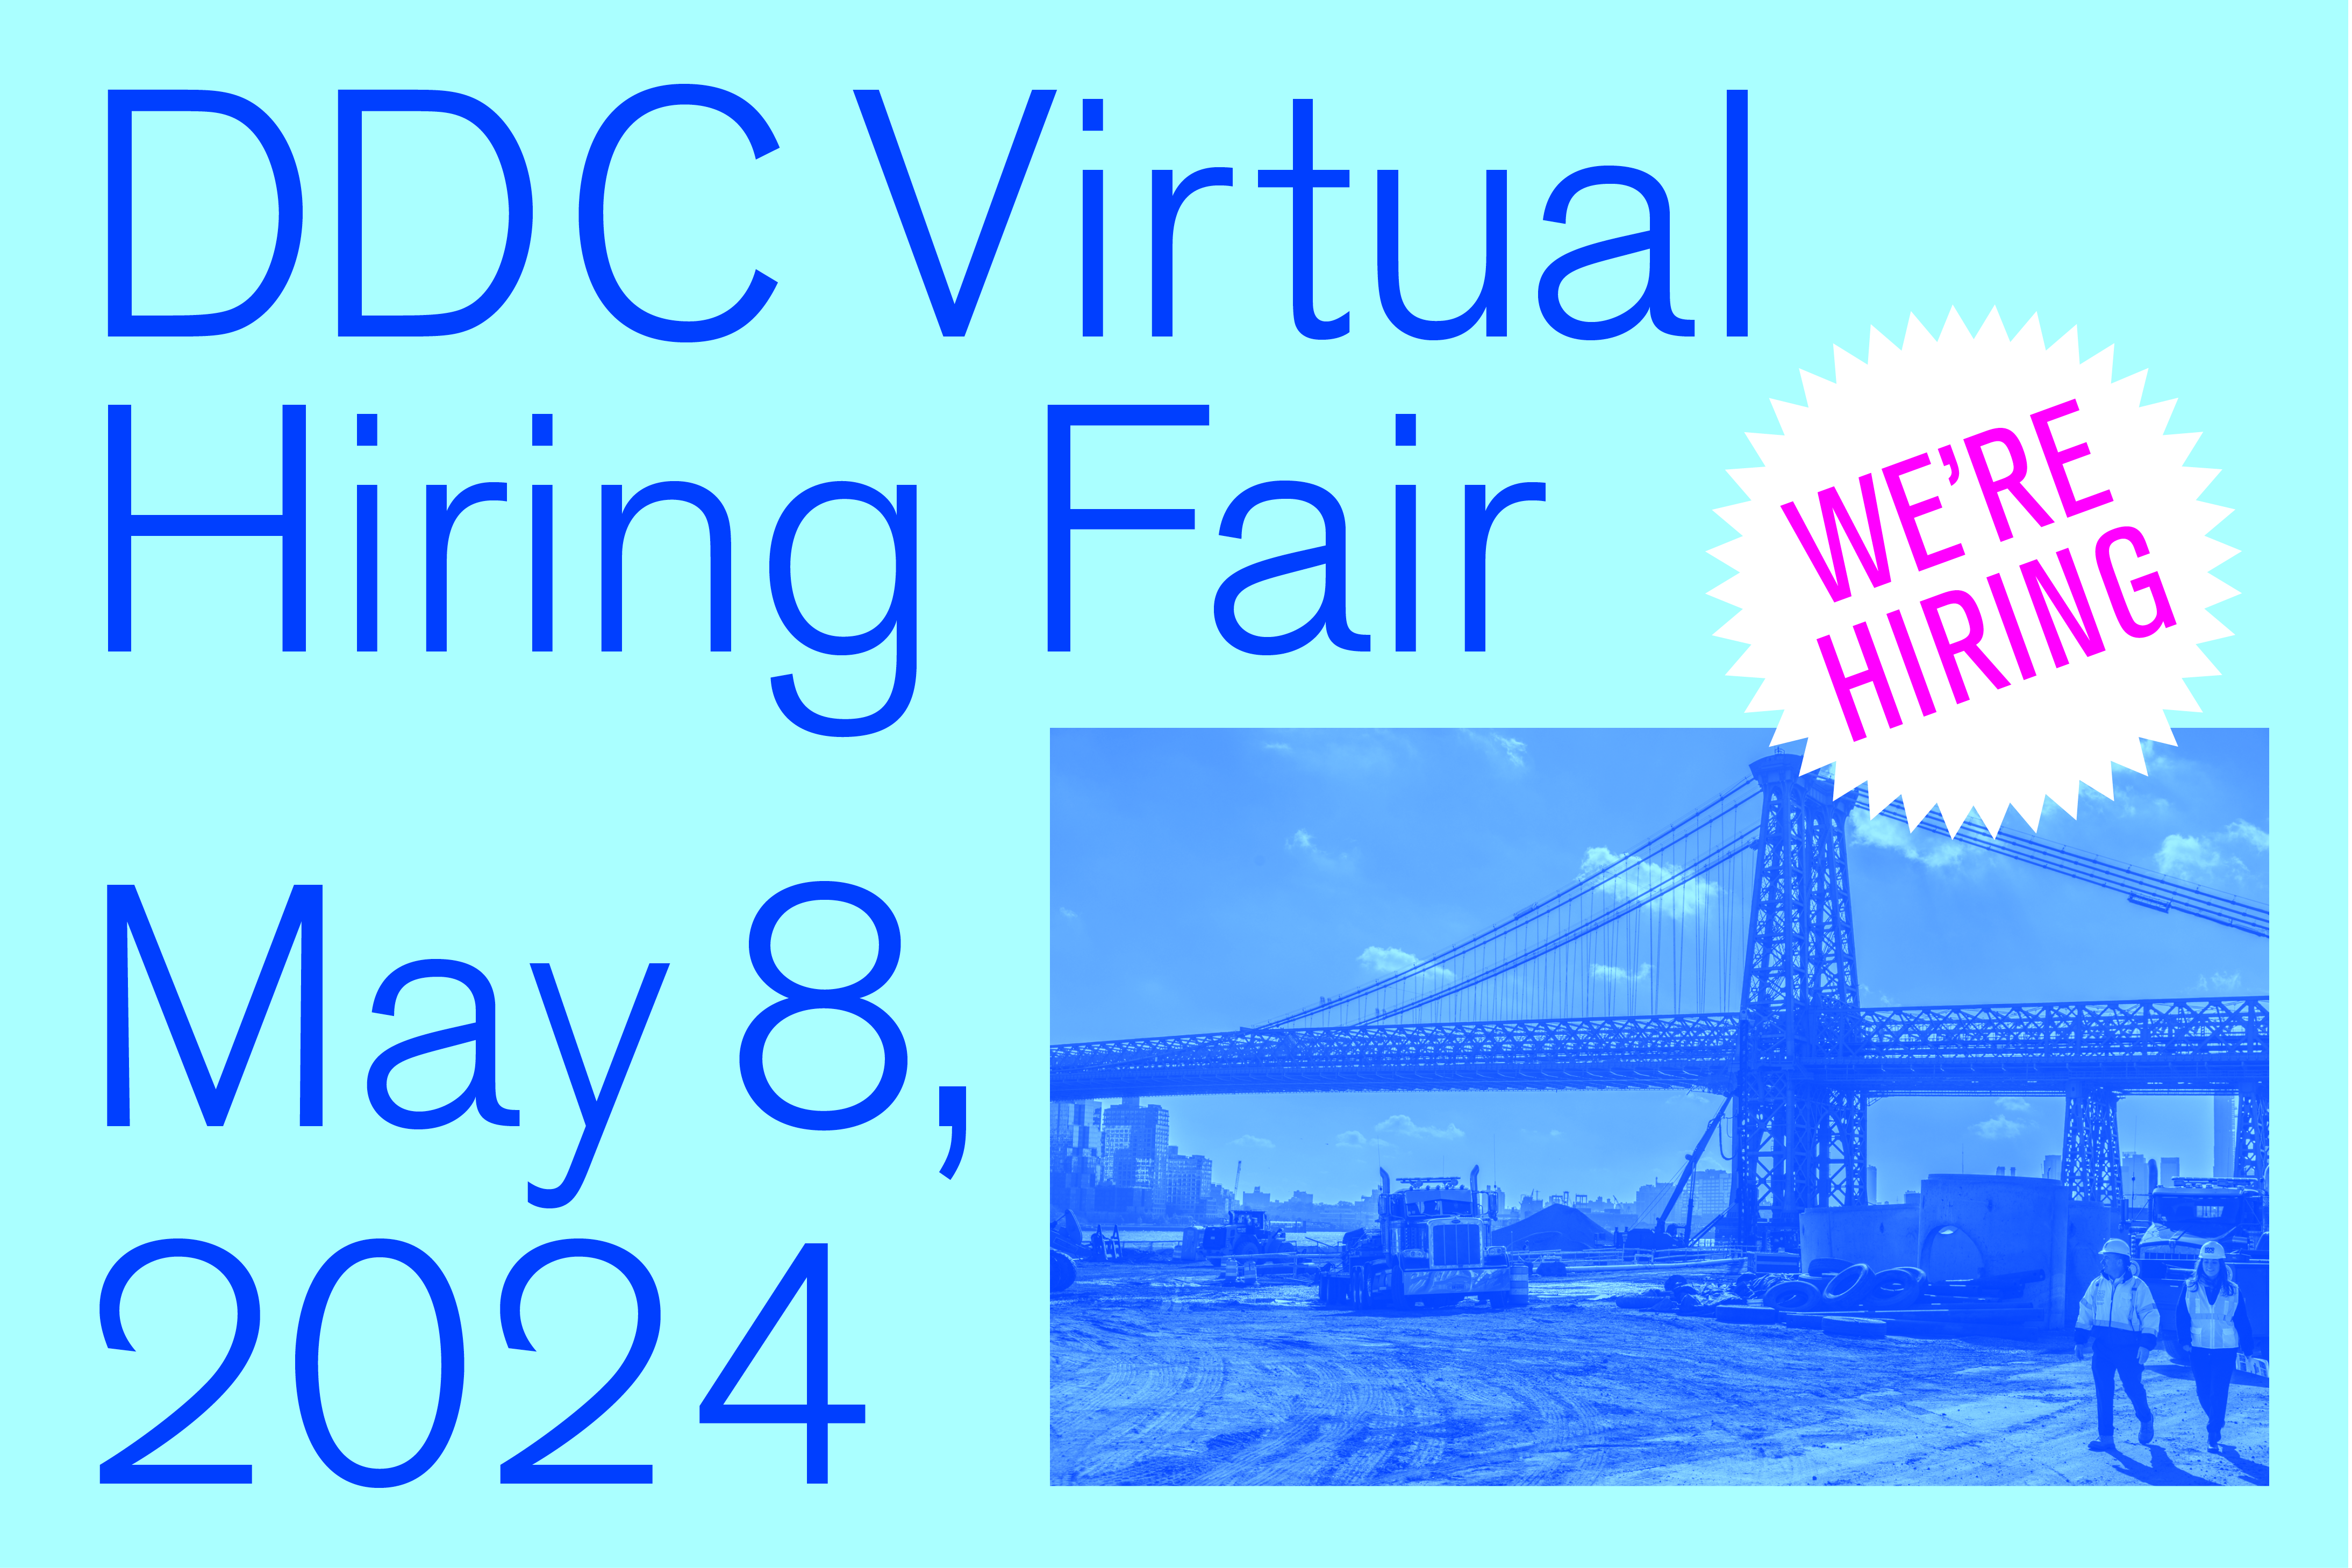 DDC Virtual Hiring Fair Announcement on May 8th